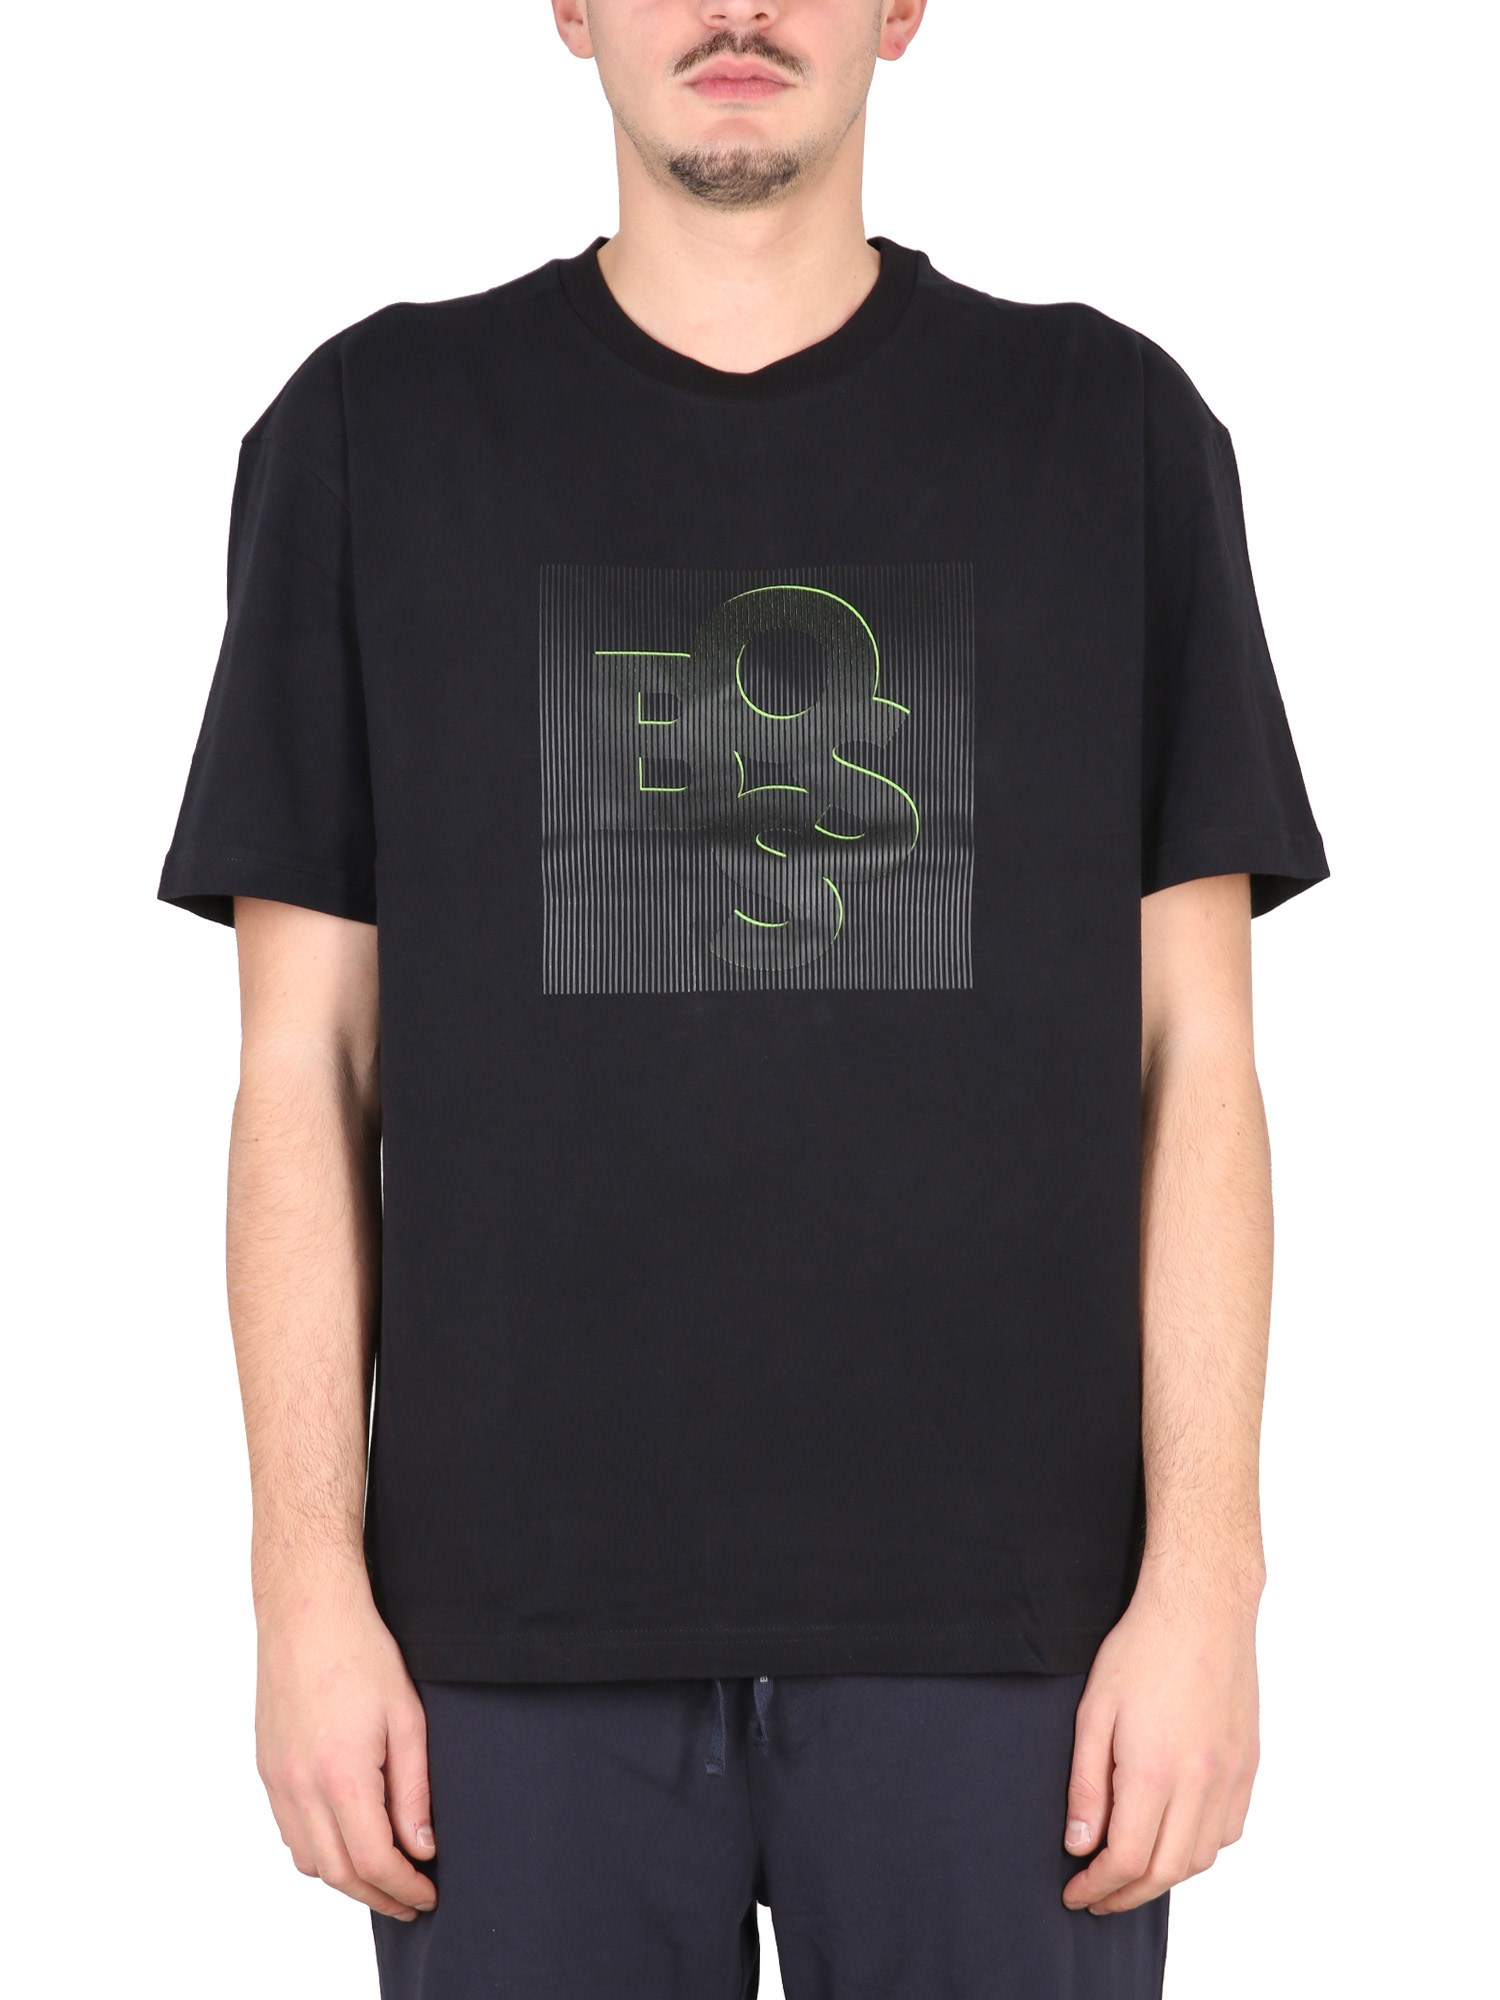 boss logo print t-shirt